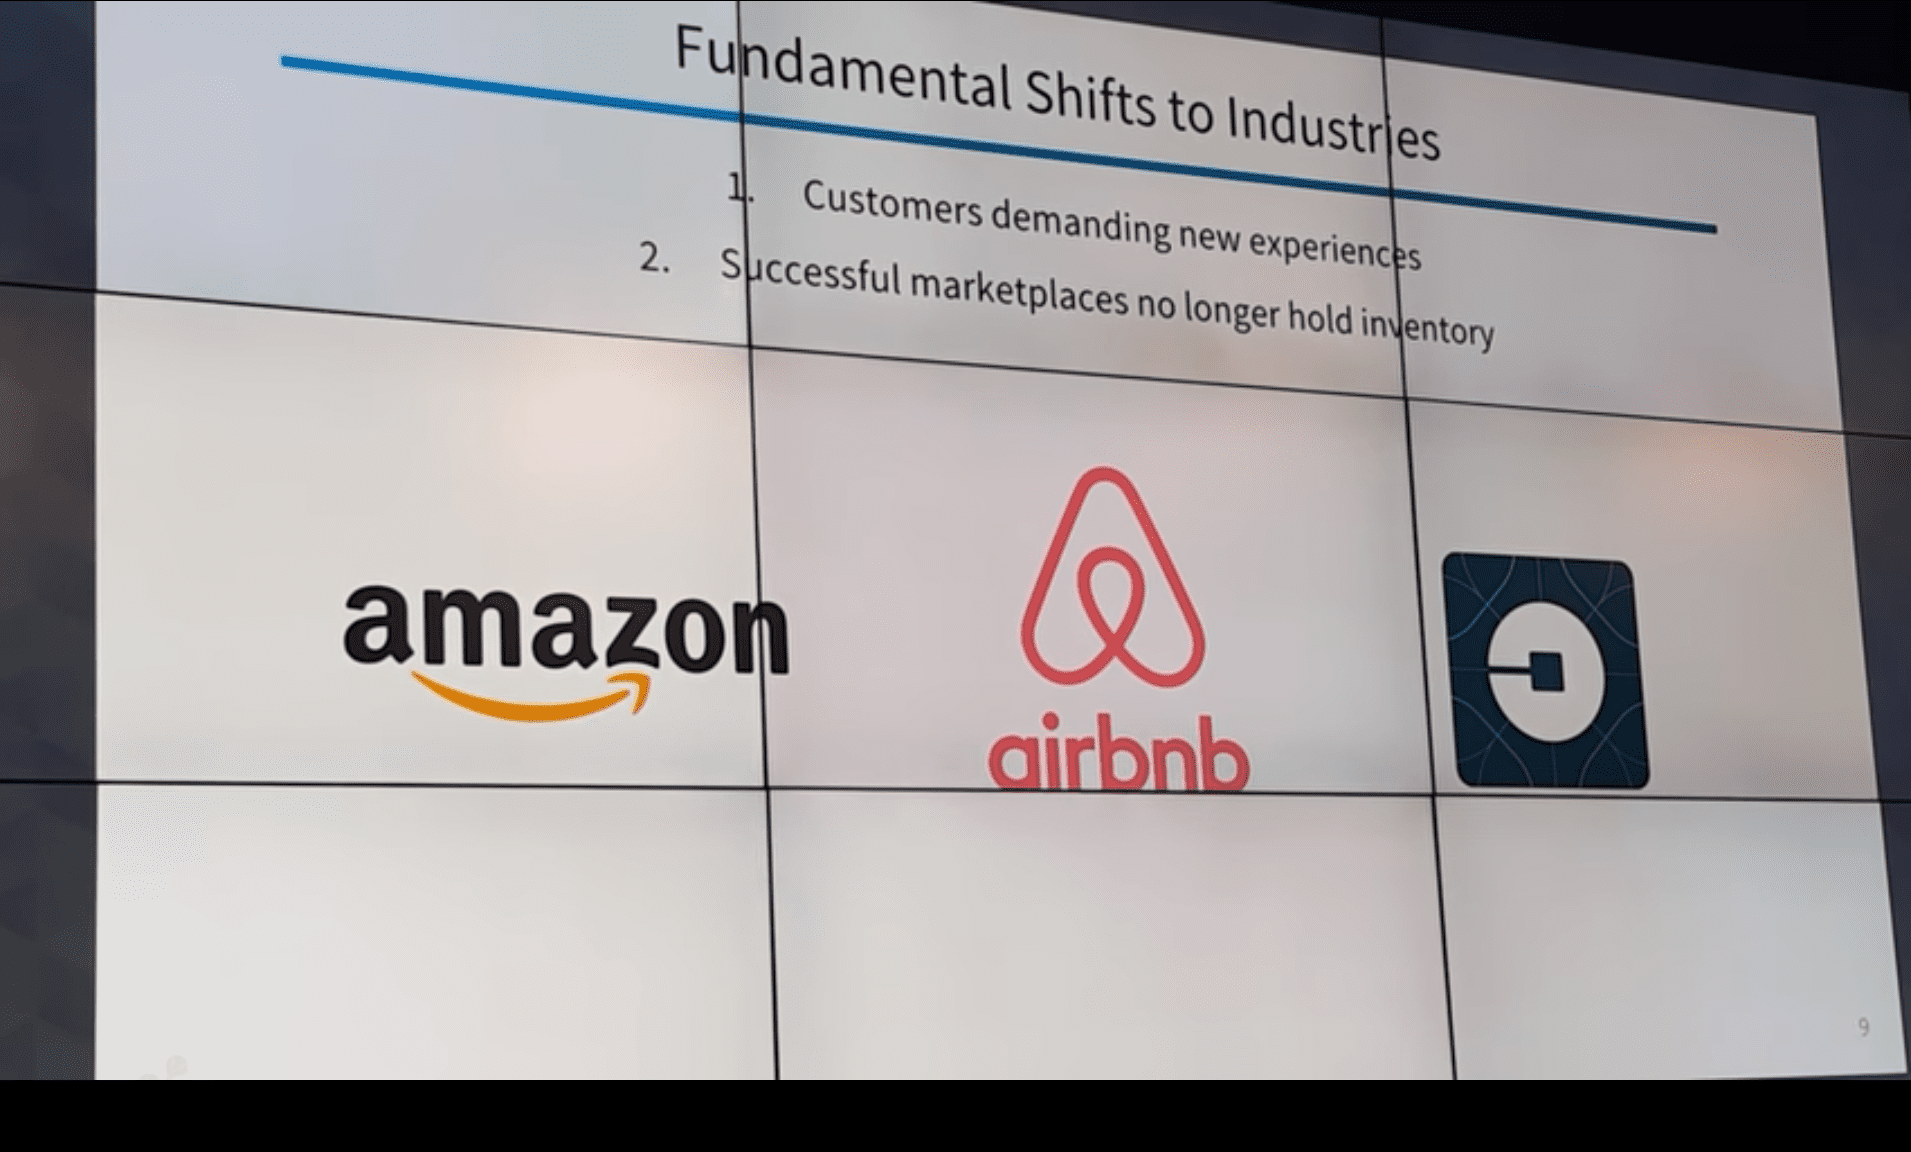 Airbnb vs Amazon